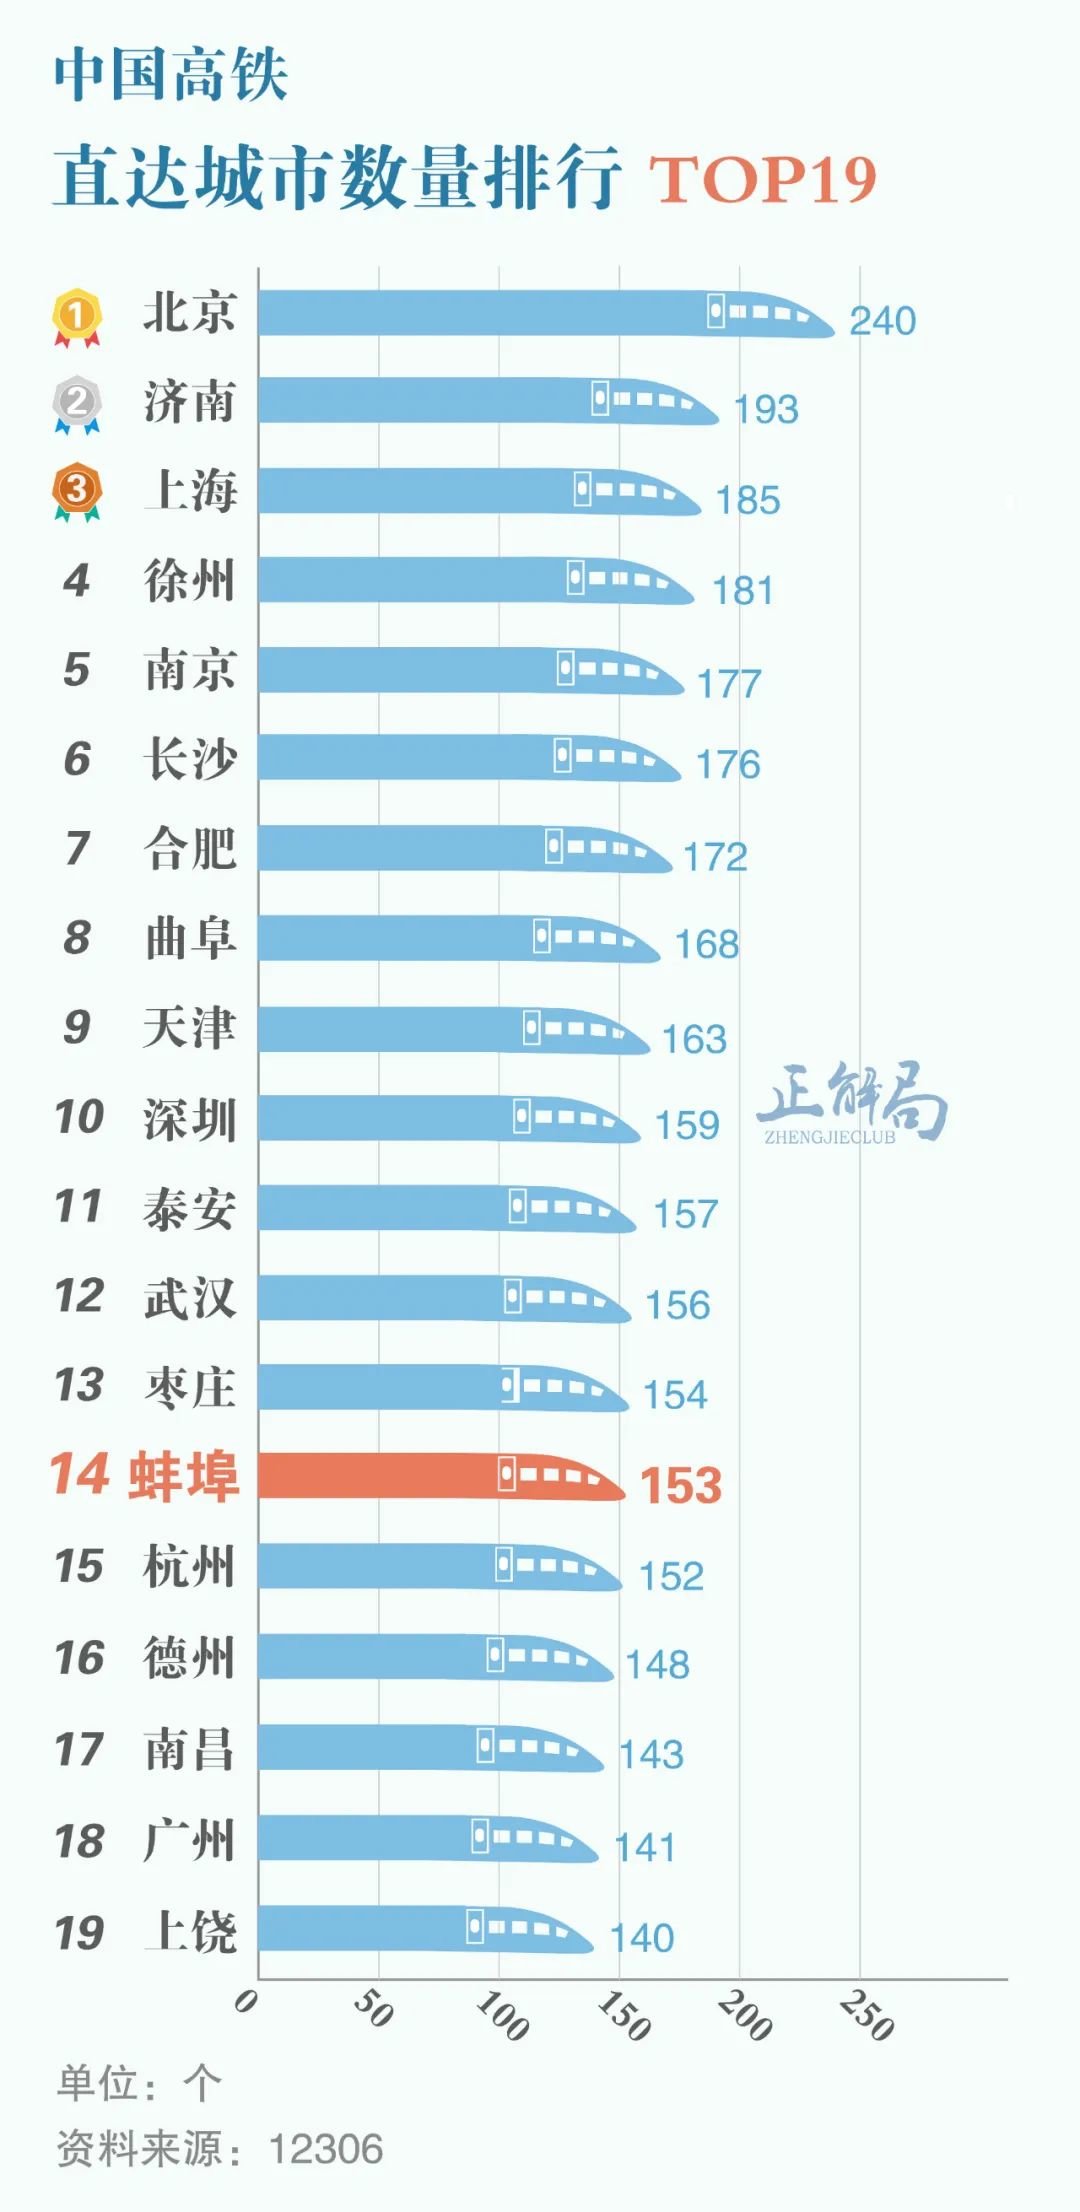 蚌埠高铁能直达153个城市 通达率排全国第14名 制图/伍攀